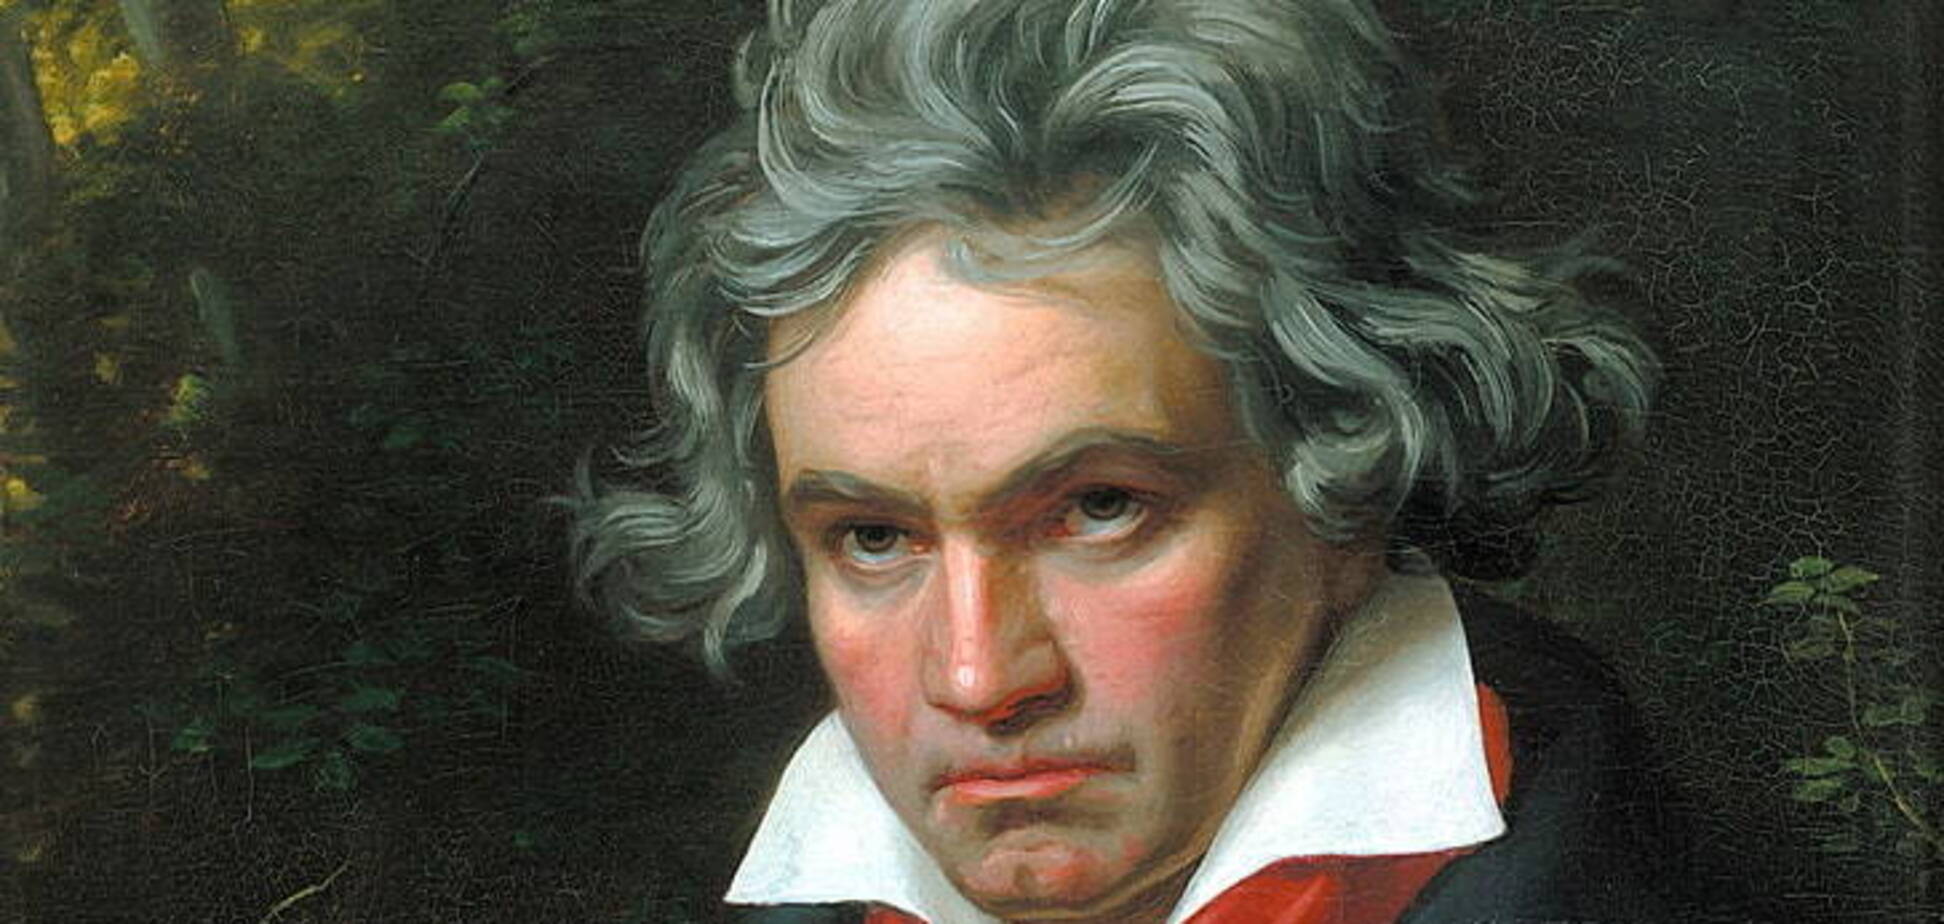 Розкрито таємницю смерті Бетховена: він справді отруївся свинцем, але помер не від цього